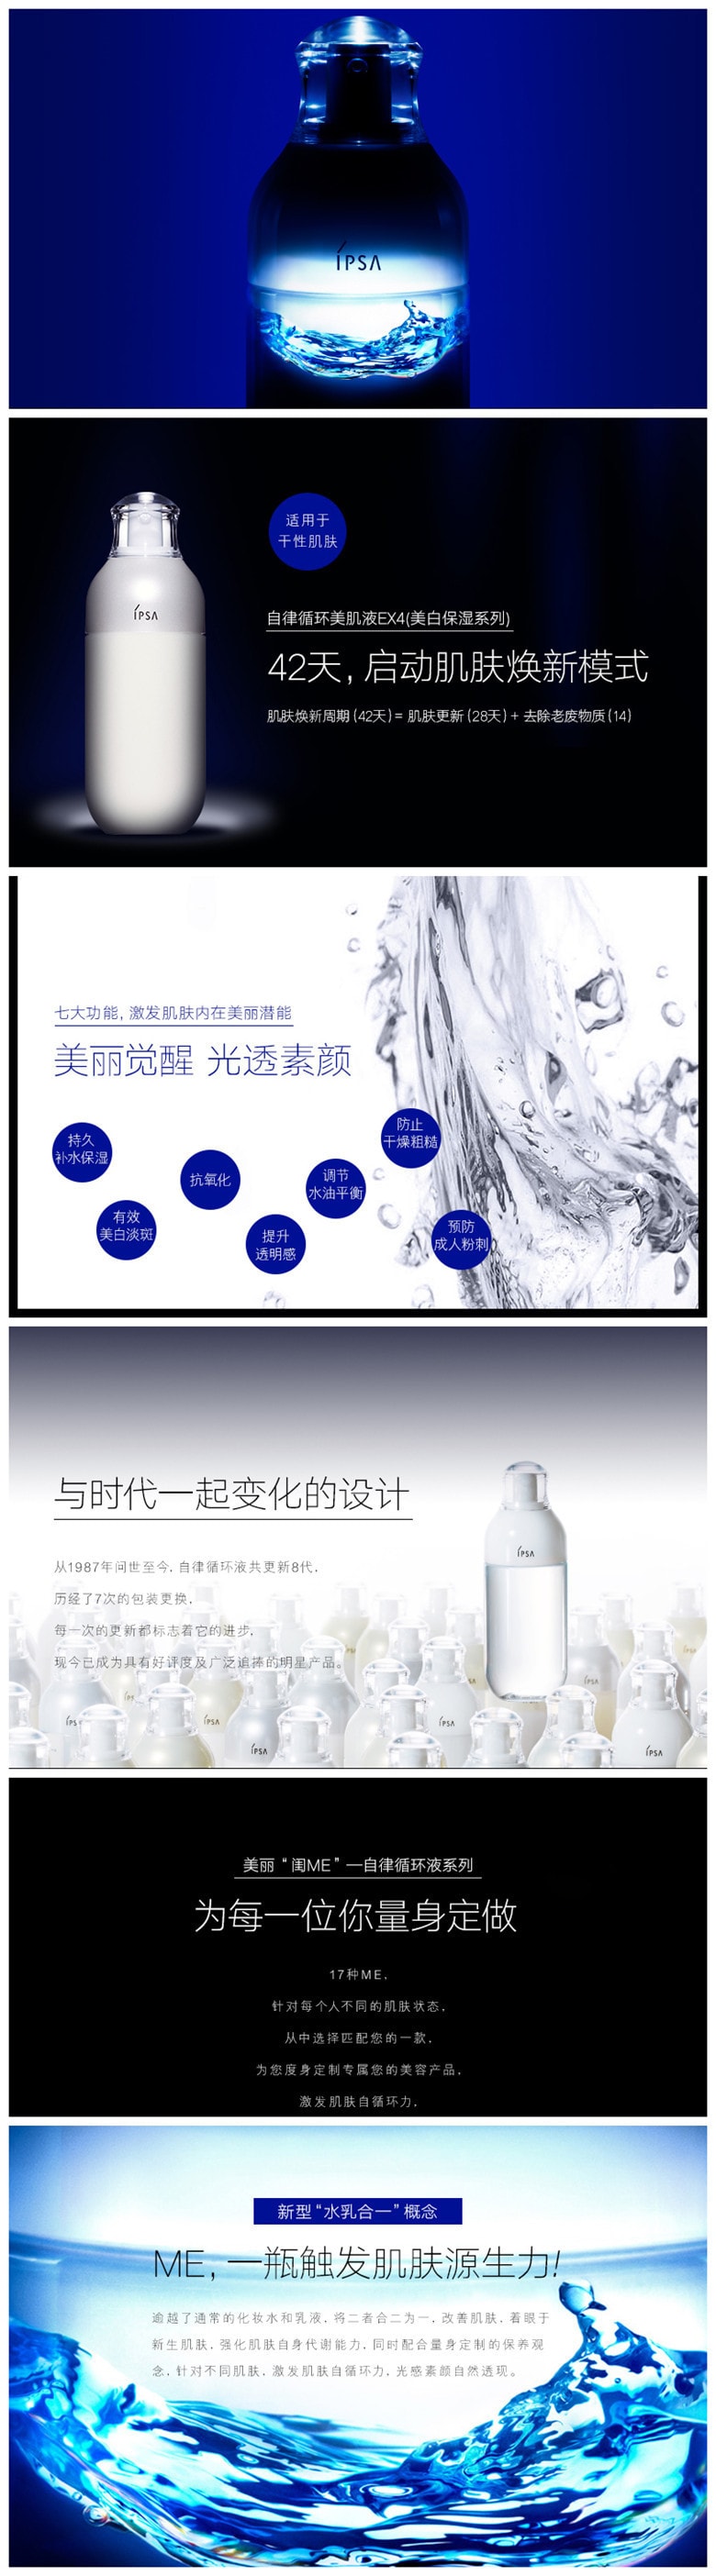 【日本直效郵件】IPSA茵芙莎 第八代自律循環保濕乳液175ml Regular#1